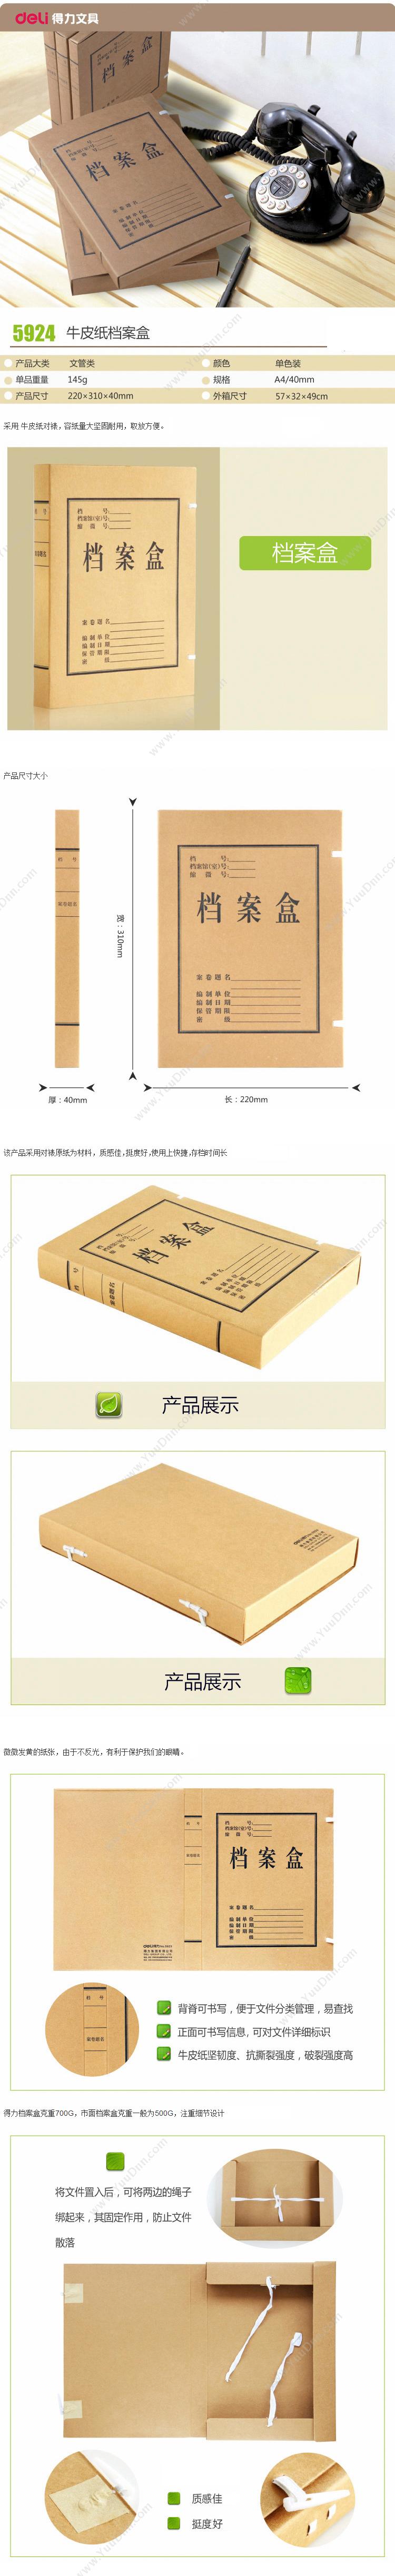 得力 Deli 5924 牛皮纸档案盒 310*220*40mm  10只/包 黄色 纸质档案盒